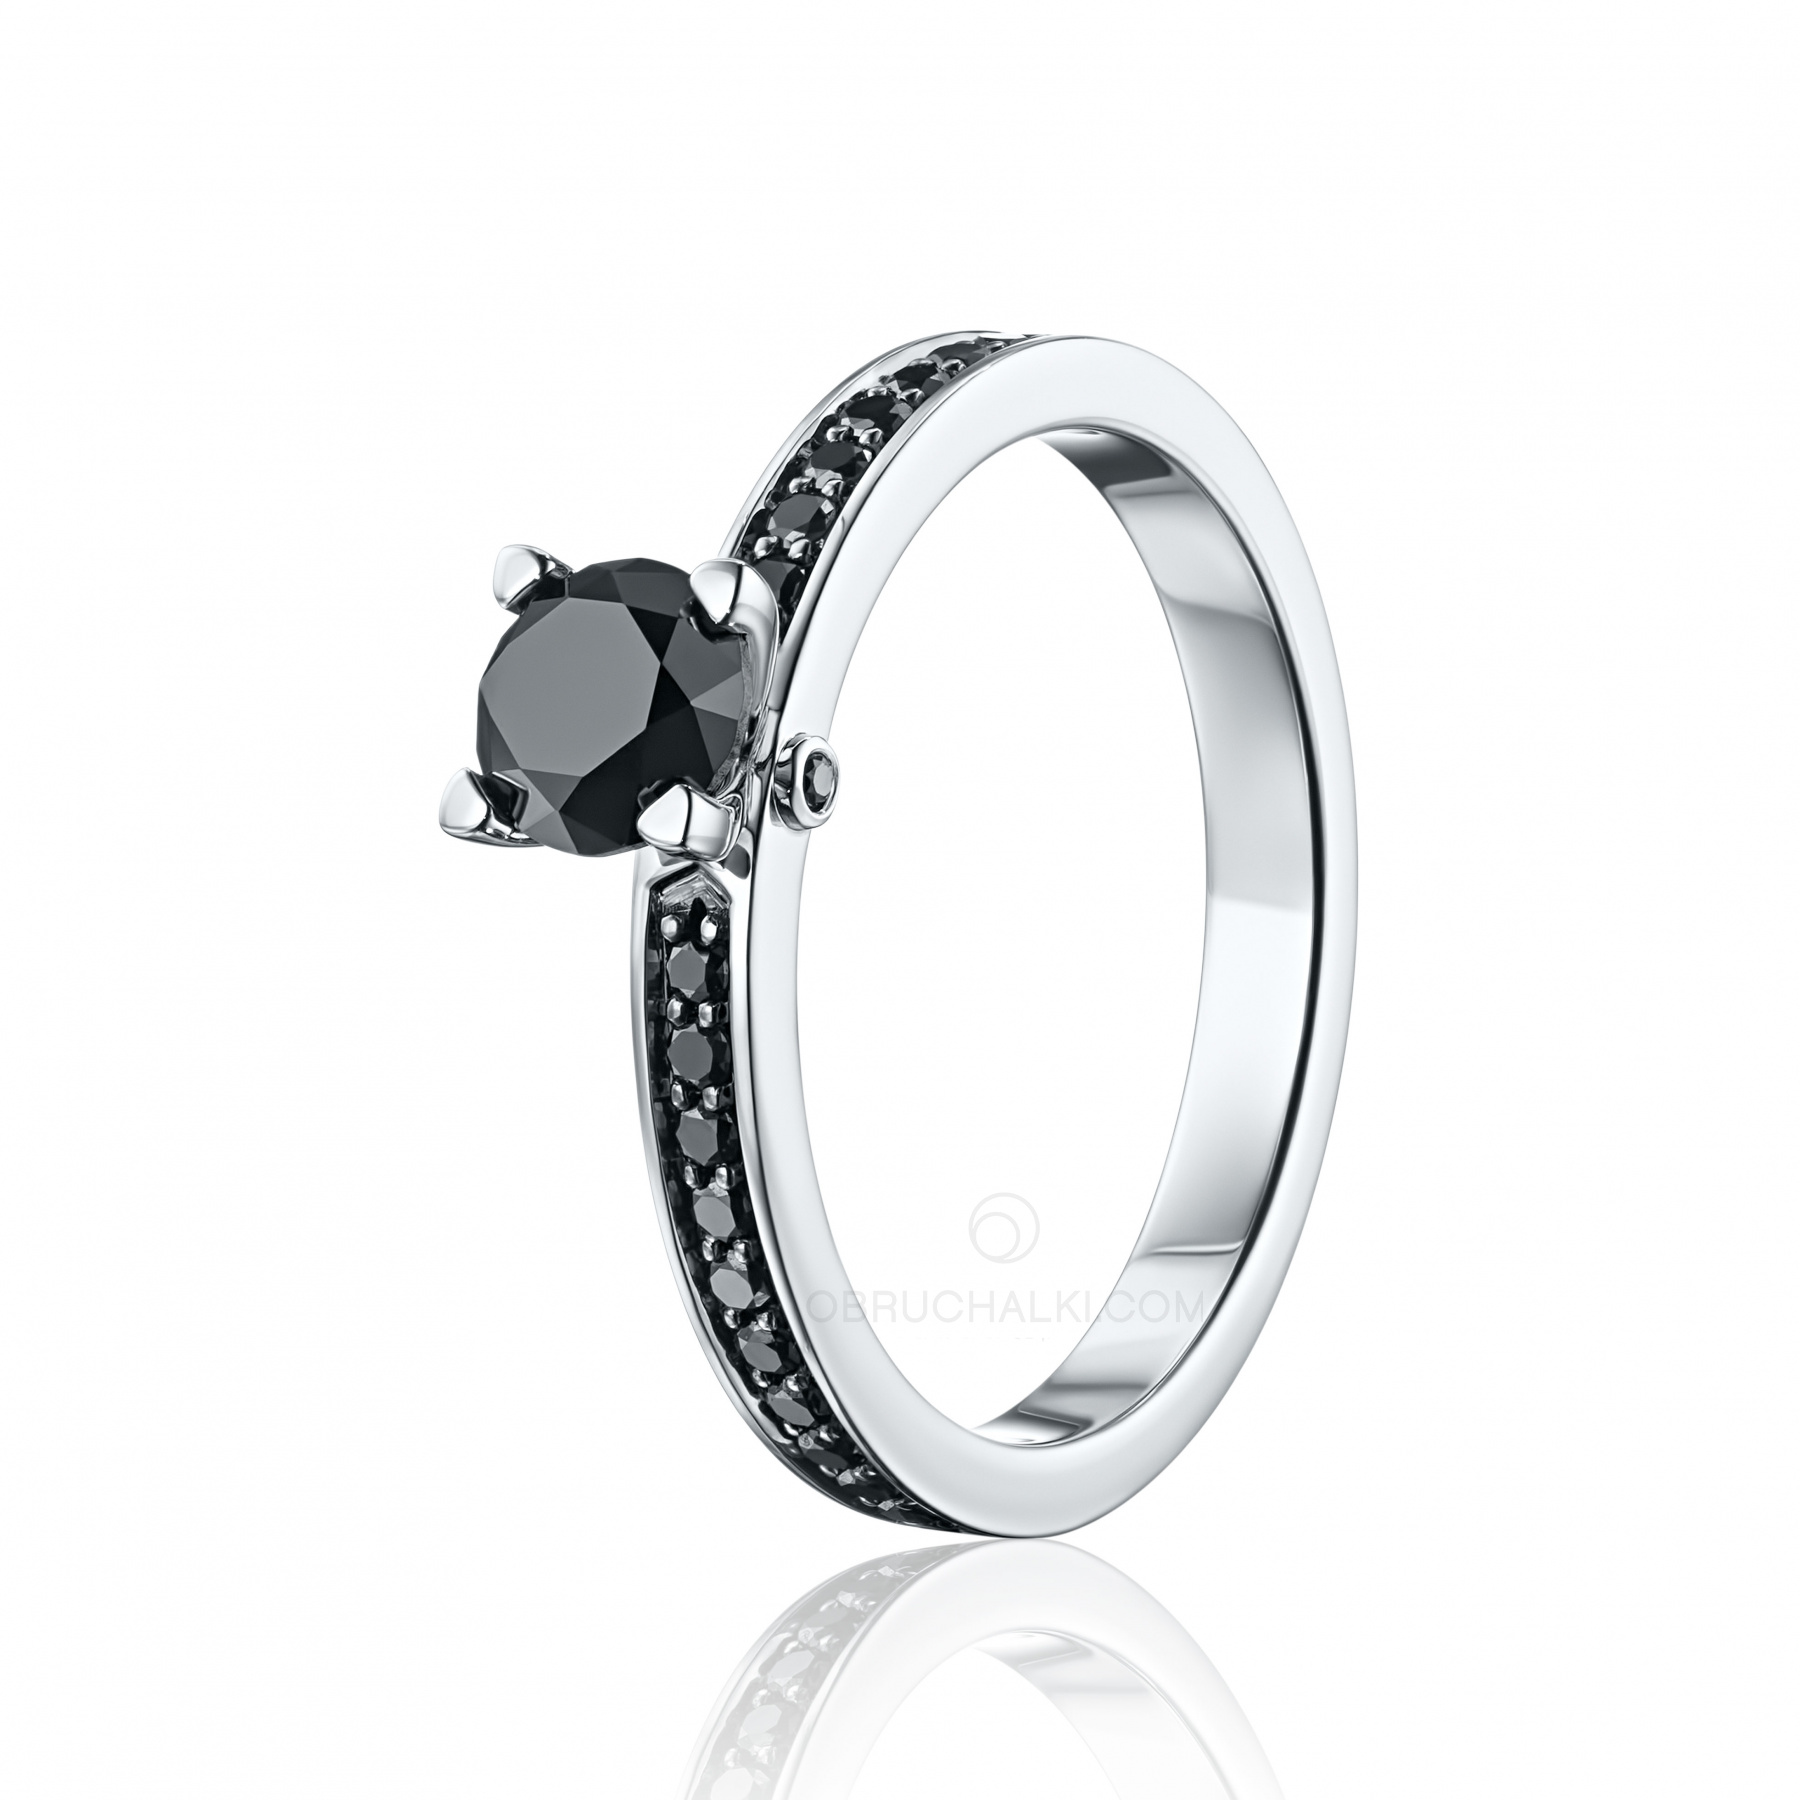 Помолвочное кольцо с черным круглым бриллиантом и дорожкой из черных бриллиантов купить в магазине: цена, оперативная доставка, отзывы